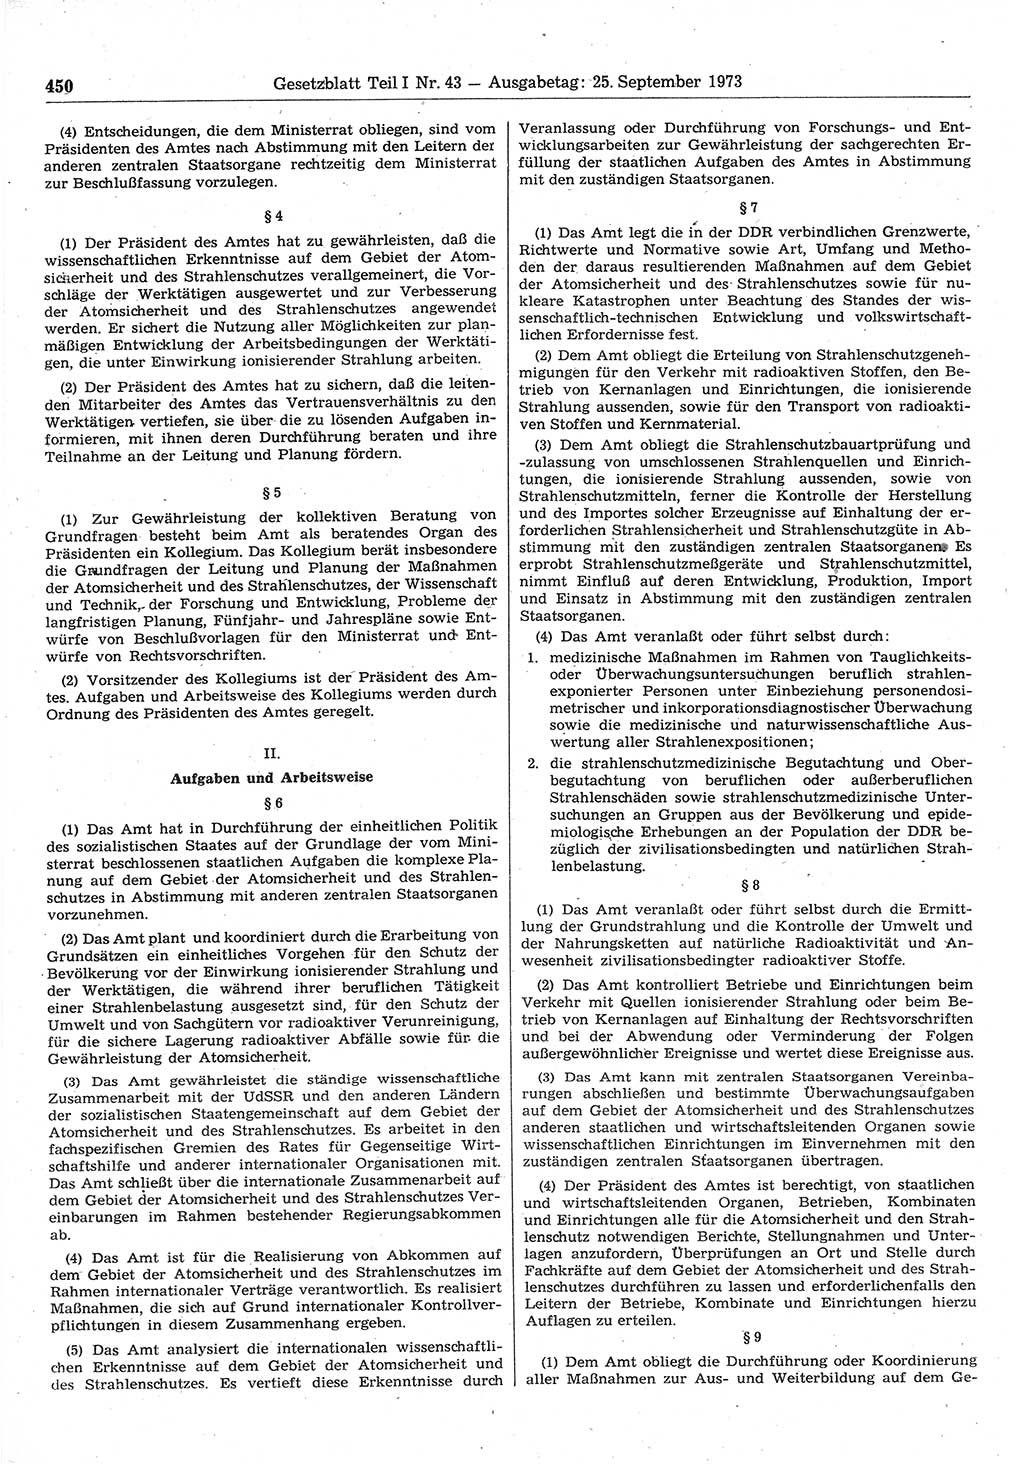 Gesetzblatt (GBl.) der Deutschen Demokratischen Republik (DDR) Teil Ⅰ 1973, Seite 450 (GBl. DDR Ⅰ 1973, S. 450)